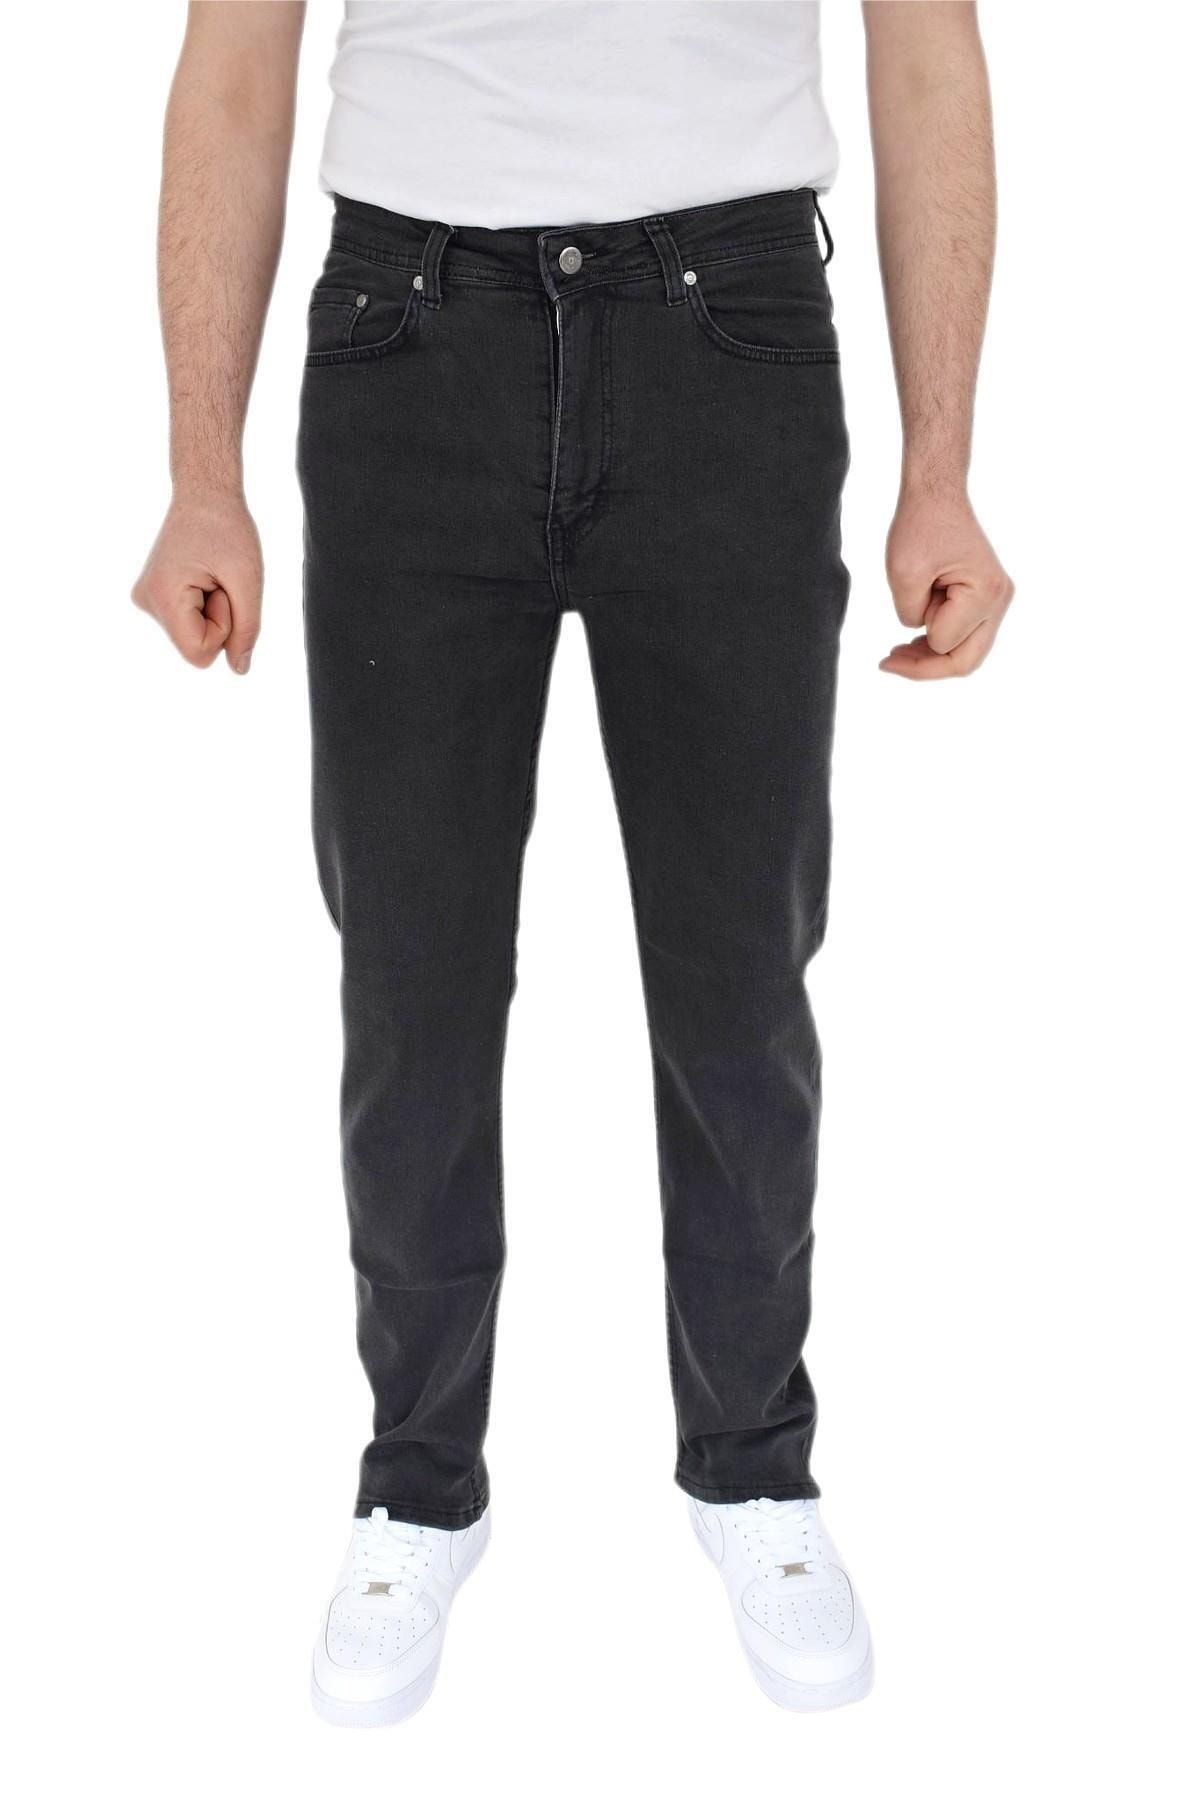 Dynamo Erkek Regular Jeans Pantolon 1700 Bgl-st02750